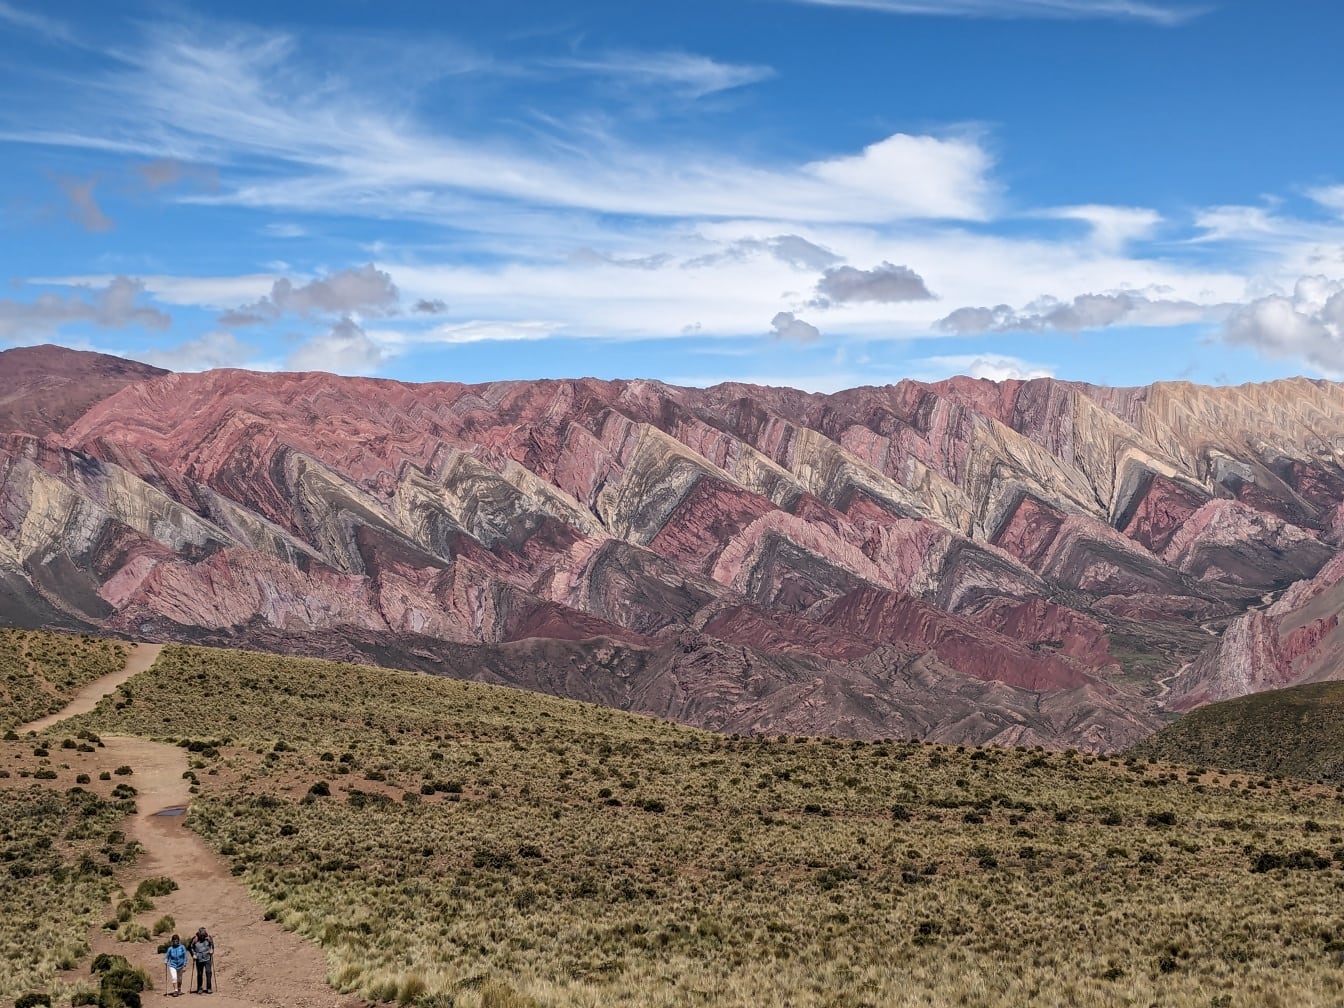 Wandelaars lopen op een onverharde weg voor een bergketen in Serranía de Hornocal in Argentinië